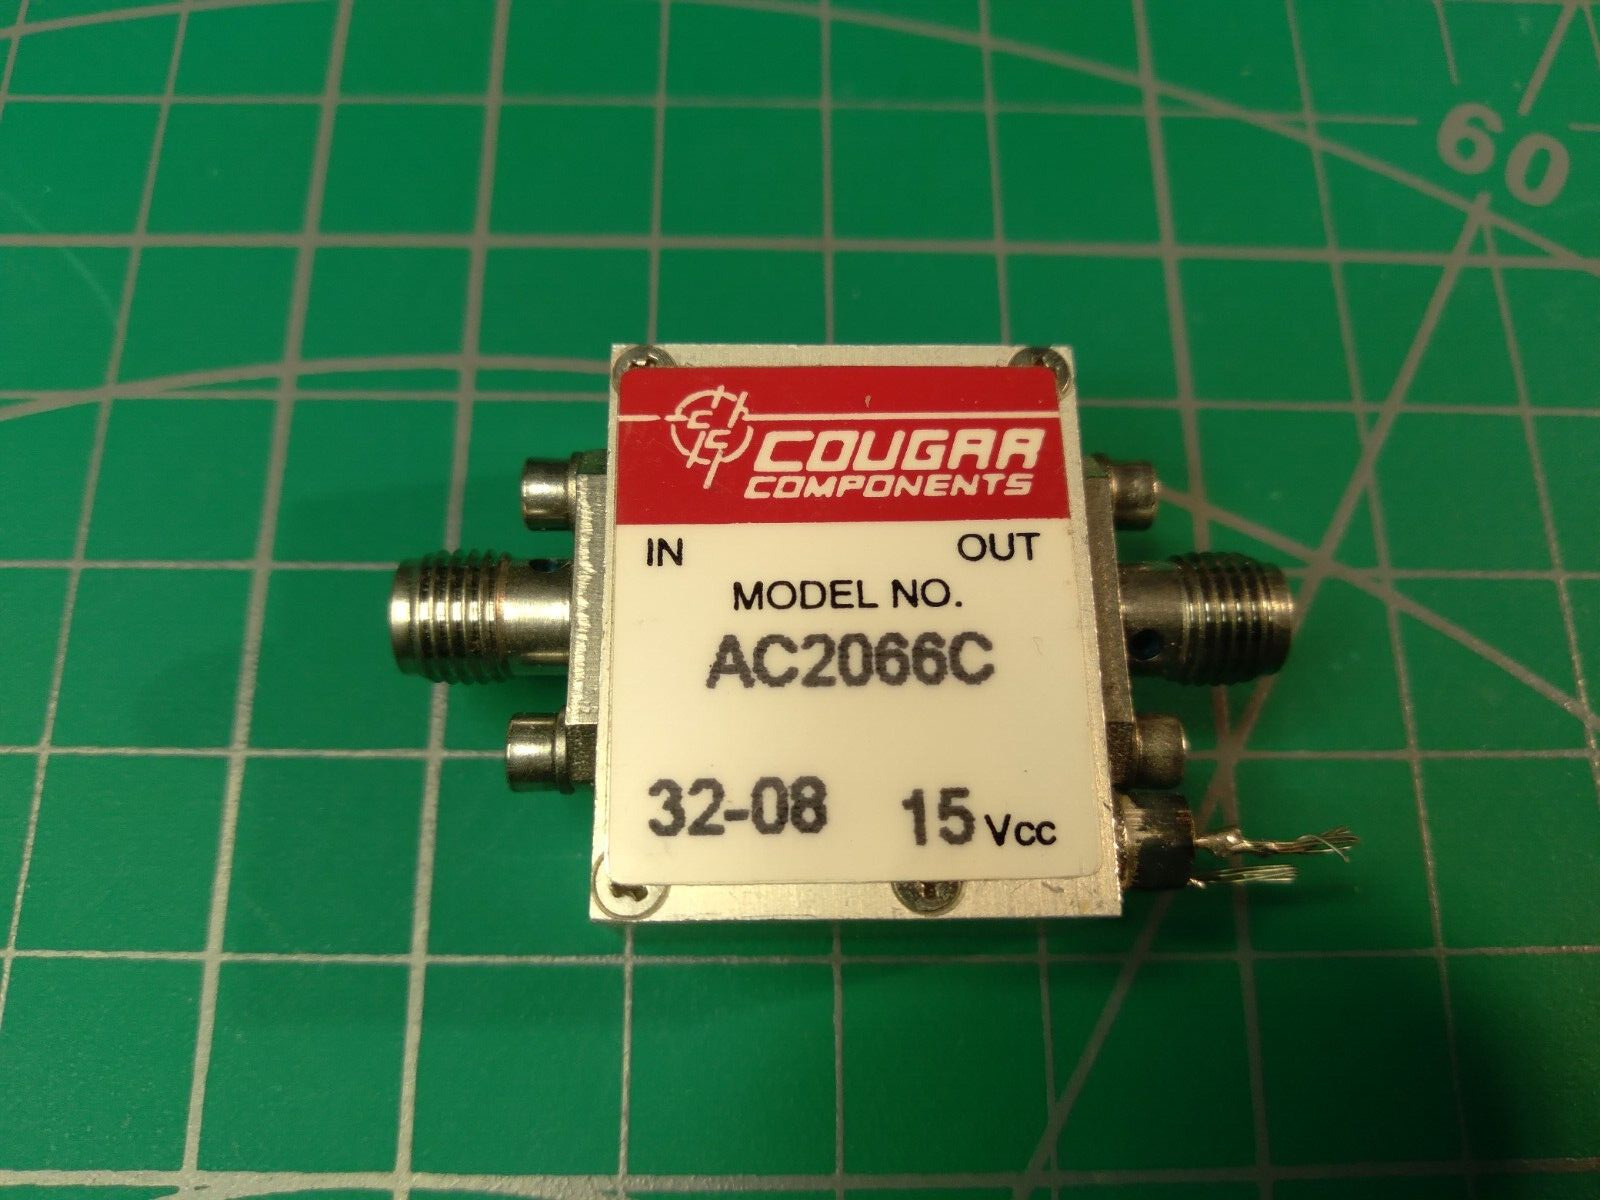 Cougar-Teledyne RF Amplifier (10.0 MHz to 2.00 GHz, Gain: 17.0 dB), AC2066C.